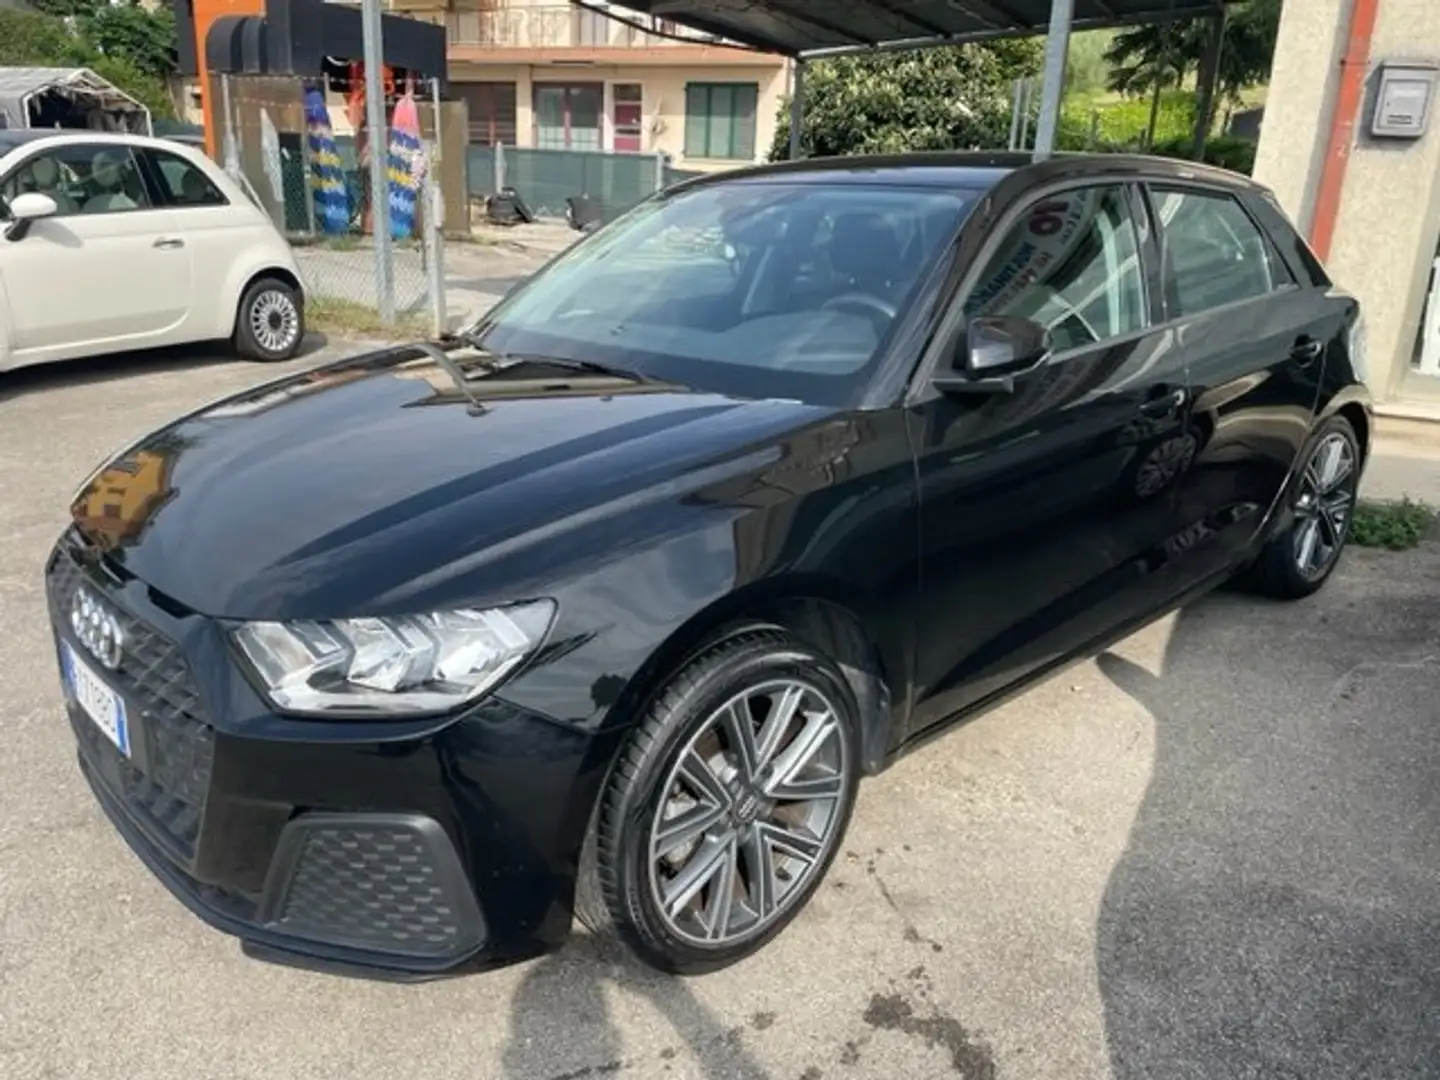 Audi A1 usata a Rimini - Rn per € 20.000,-